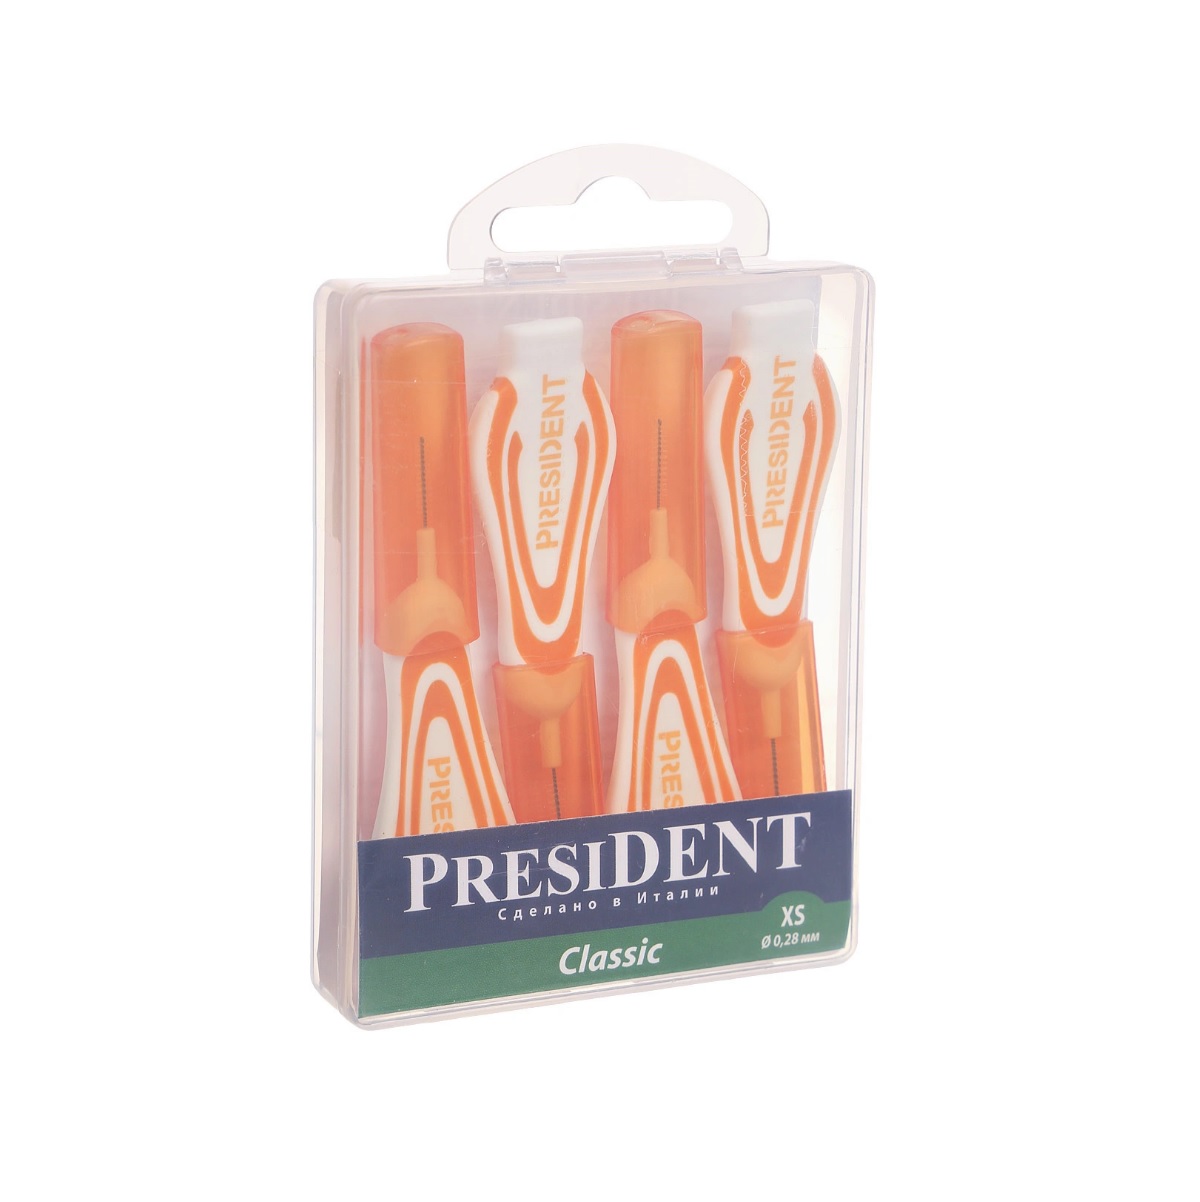 Межзубные ершики President Classic xs 0,28 мм ершики для брекетов и зубов набор 20 шт 1 2 1 5 мм